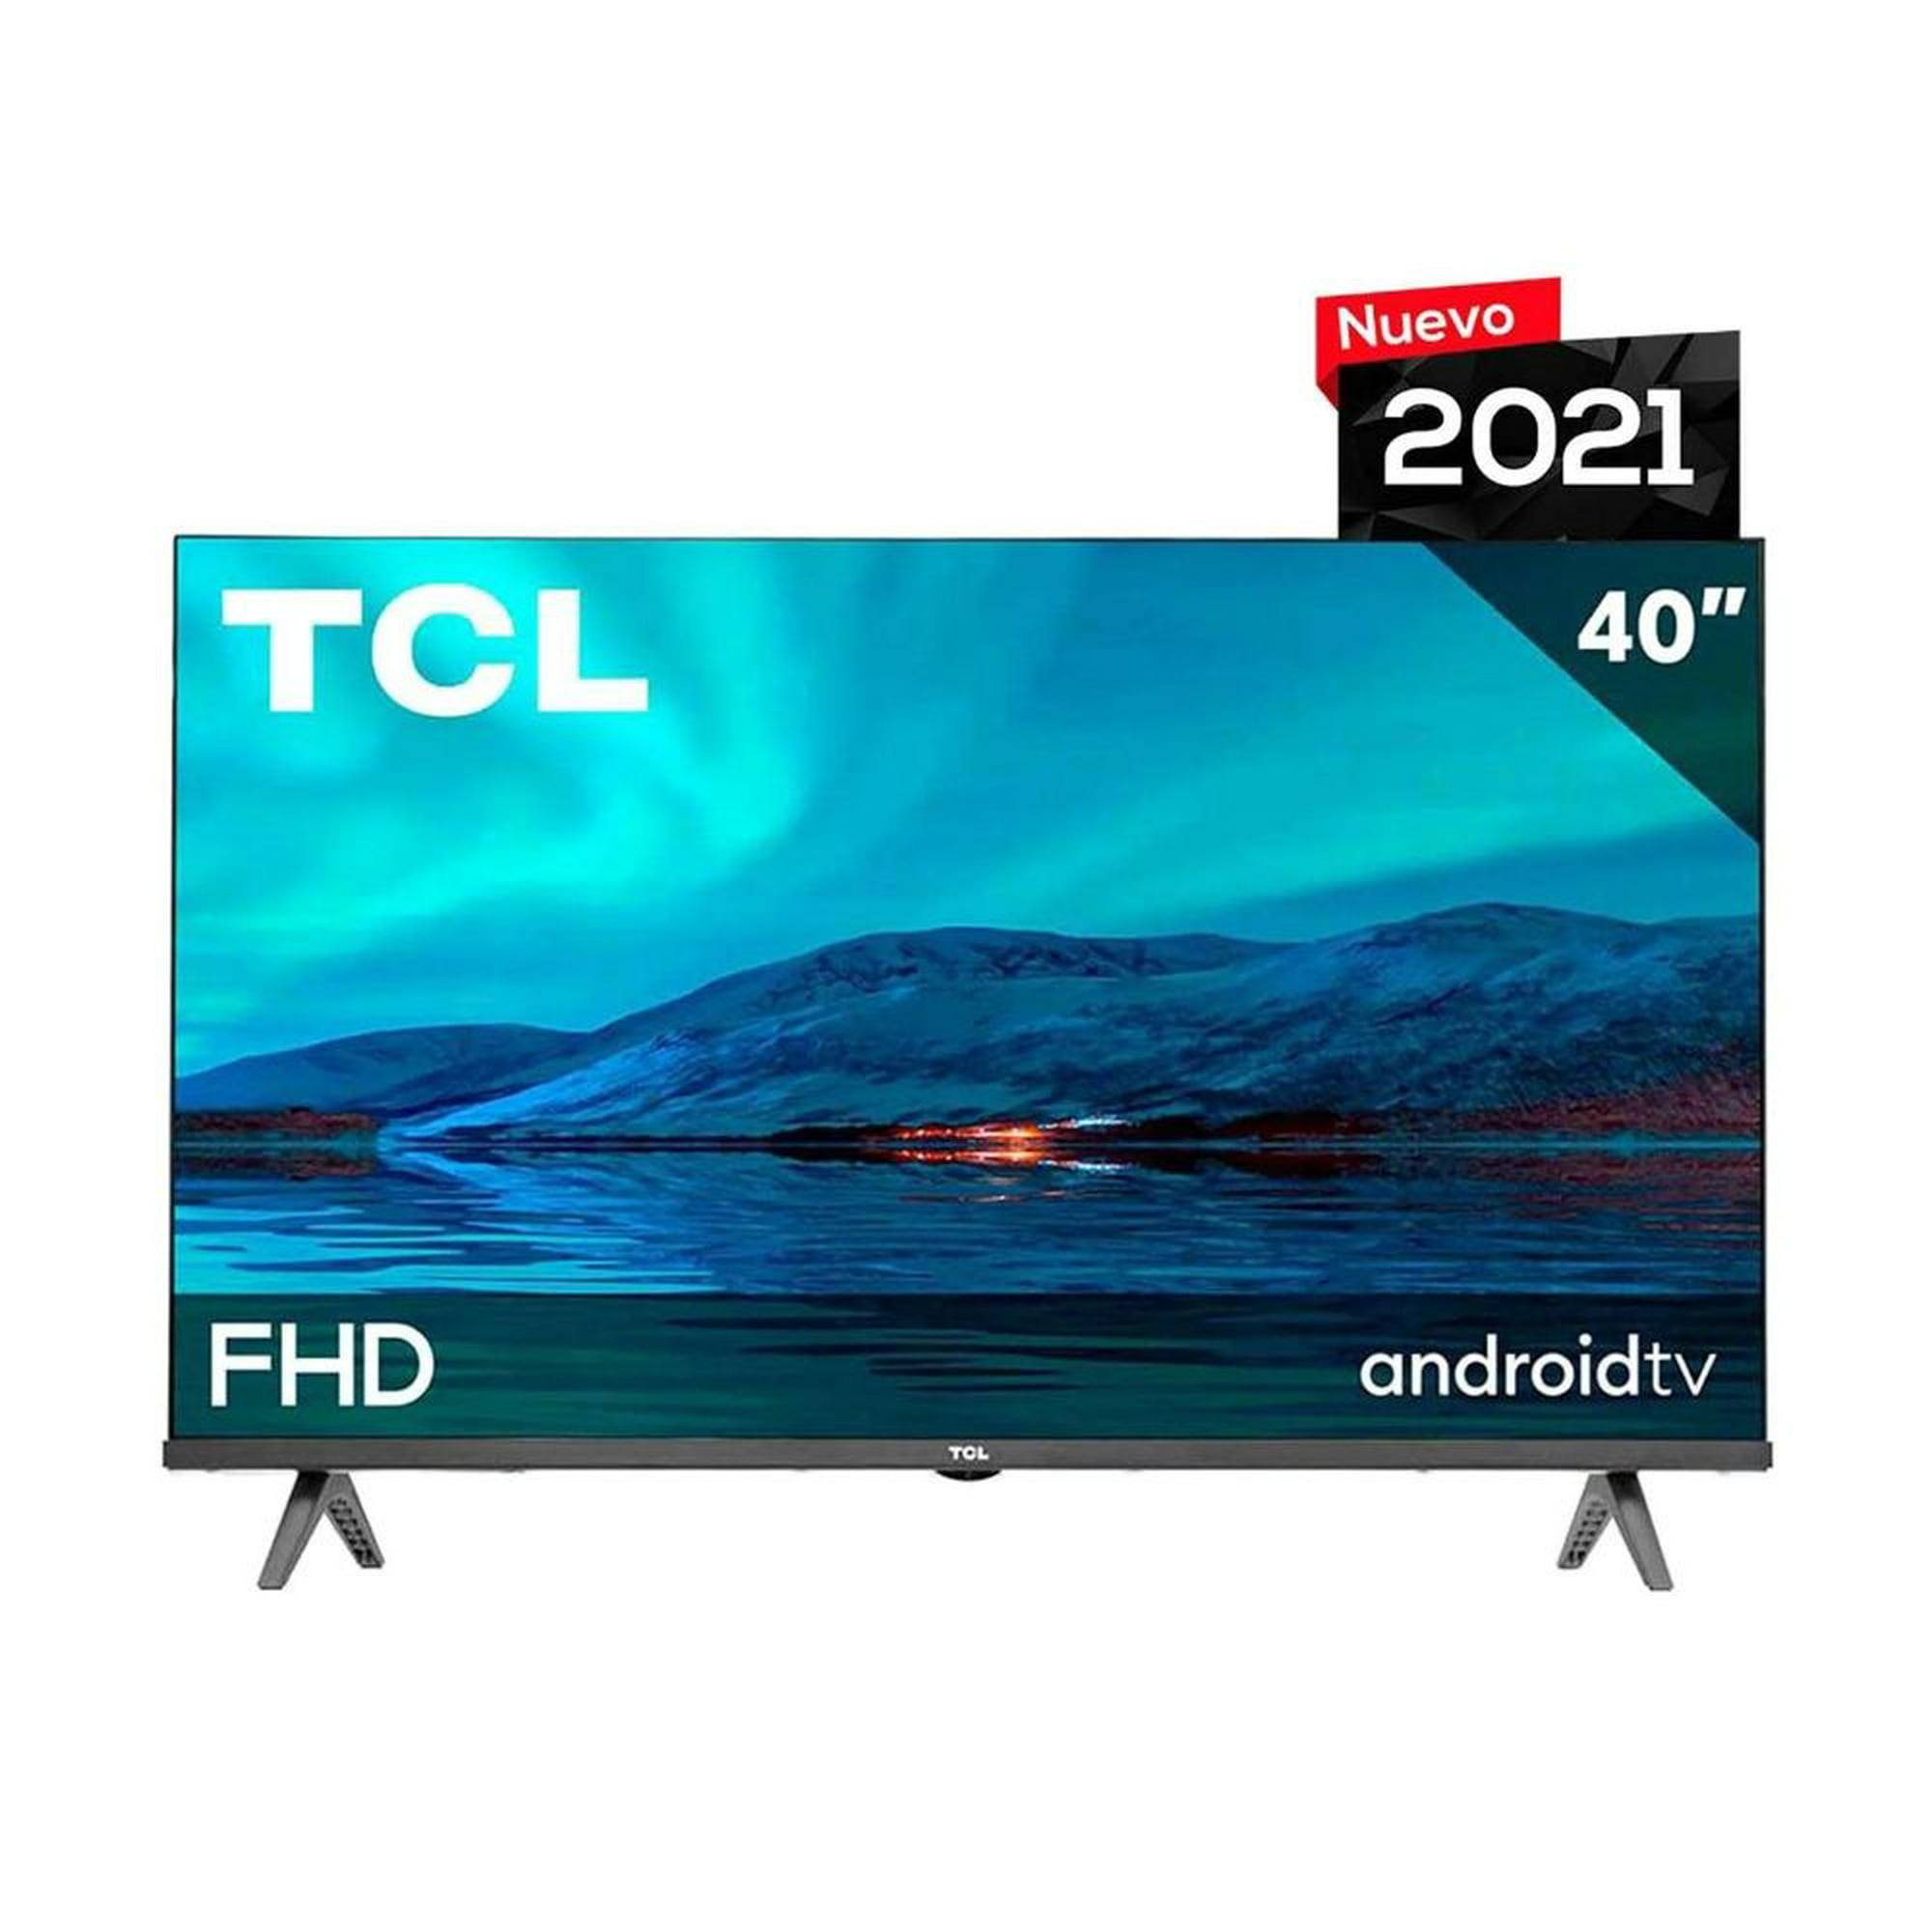 Pantalla TCL Smart TV 43 pulg. 43A445 Led 4K UHD